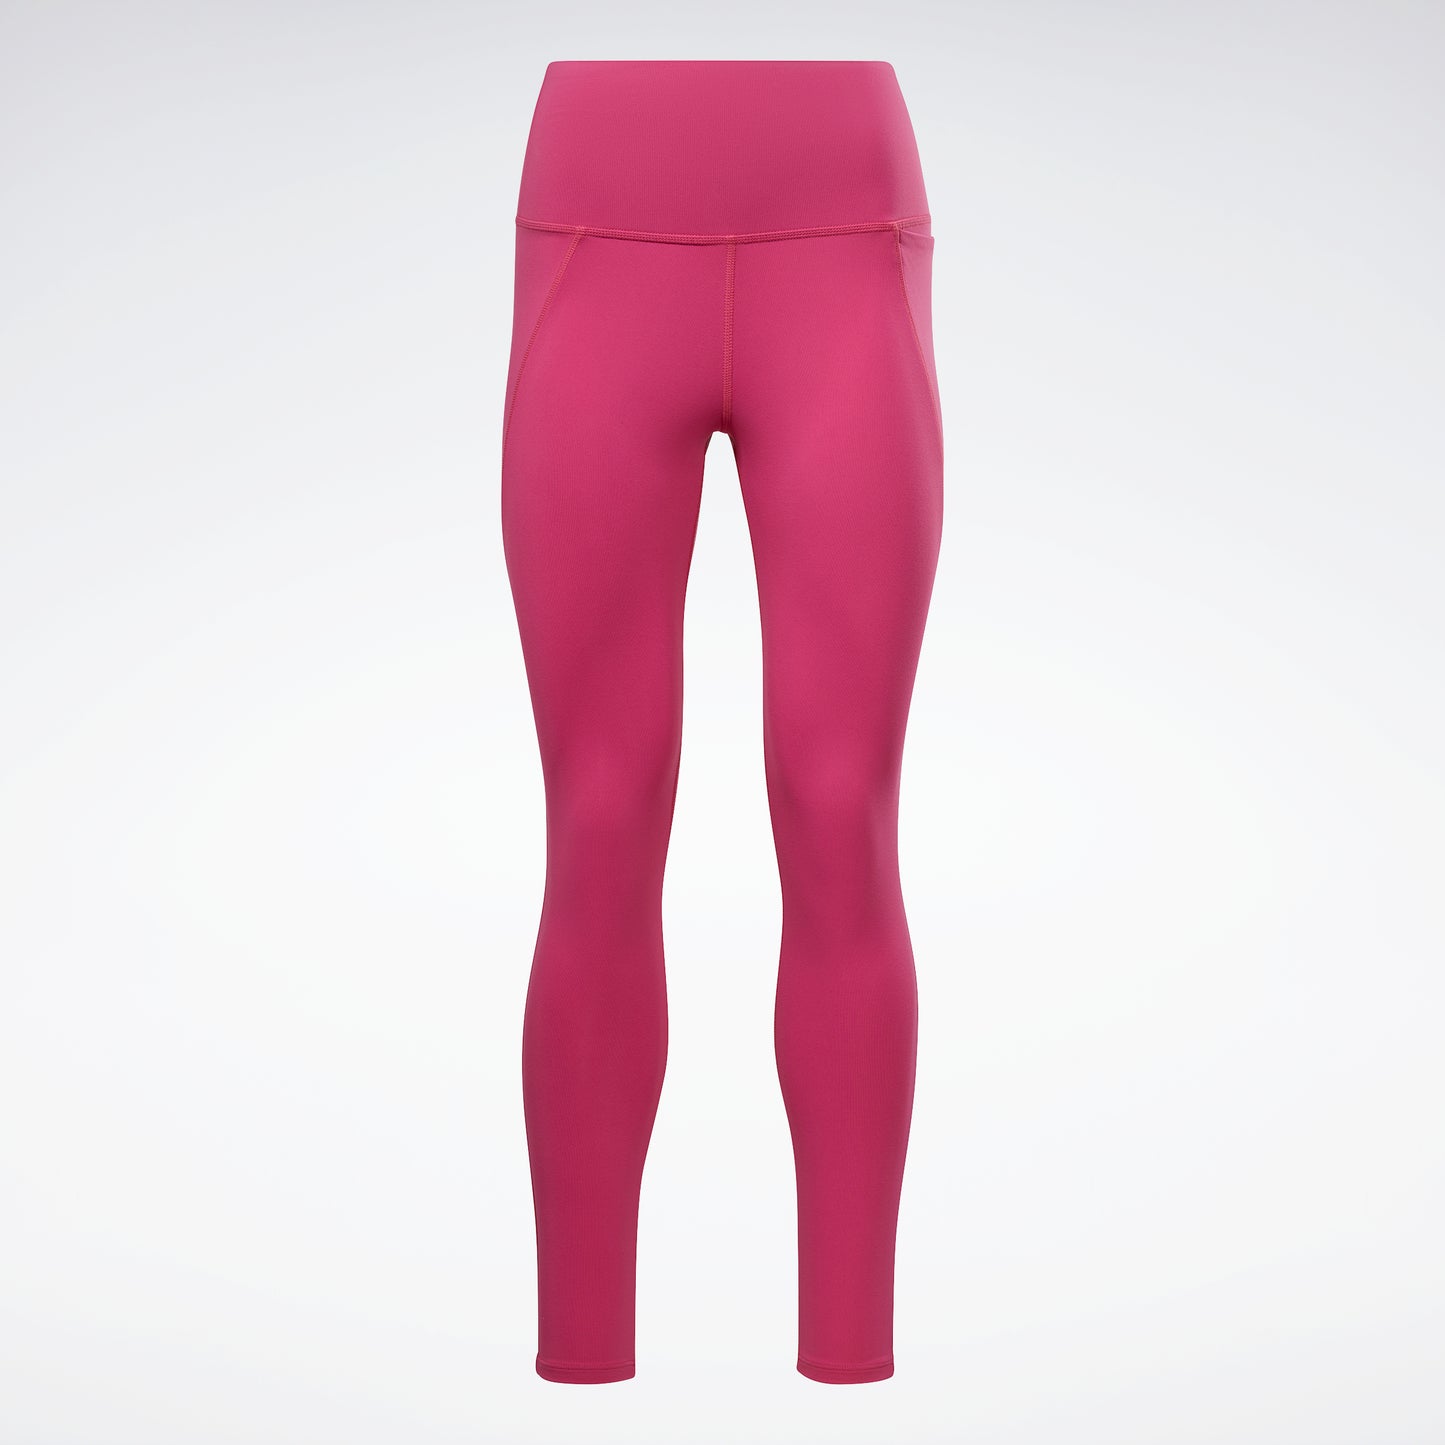  Pink - Women's Leggings / Women's Clothing: Clothing